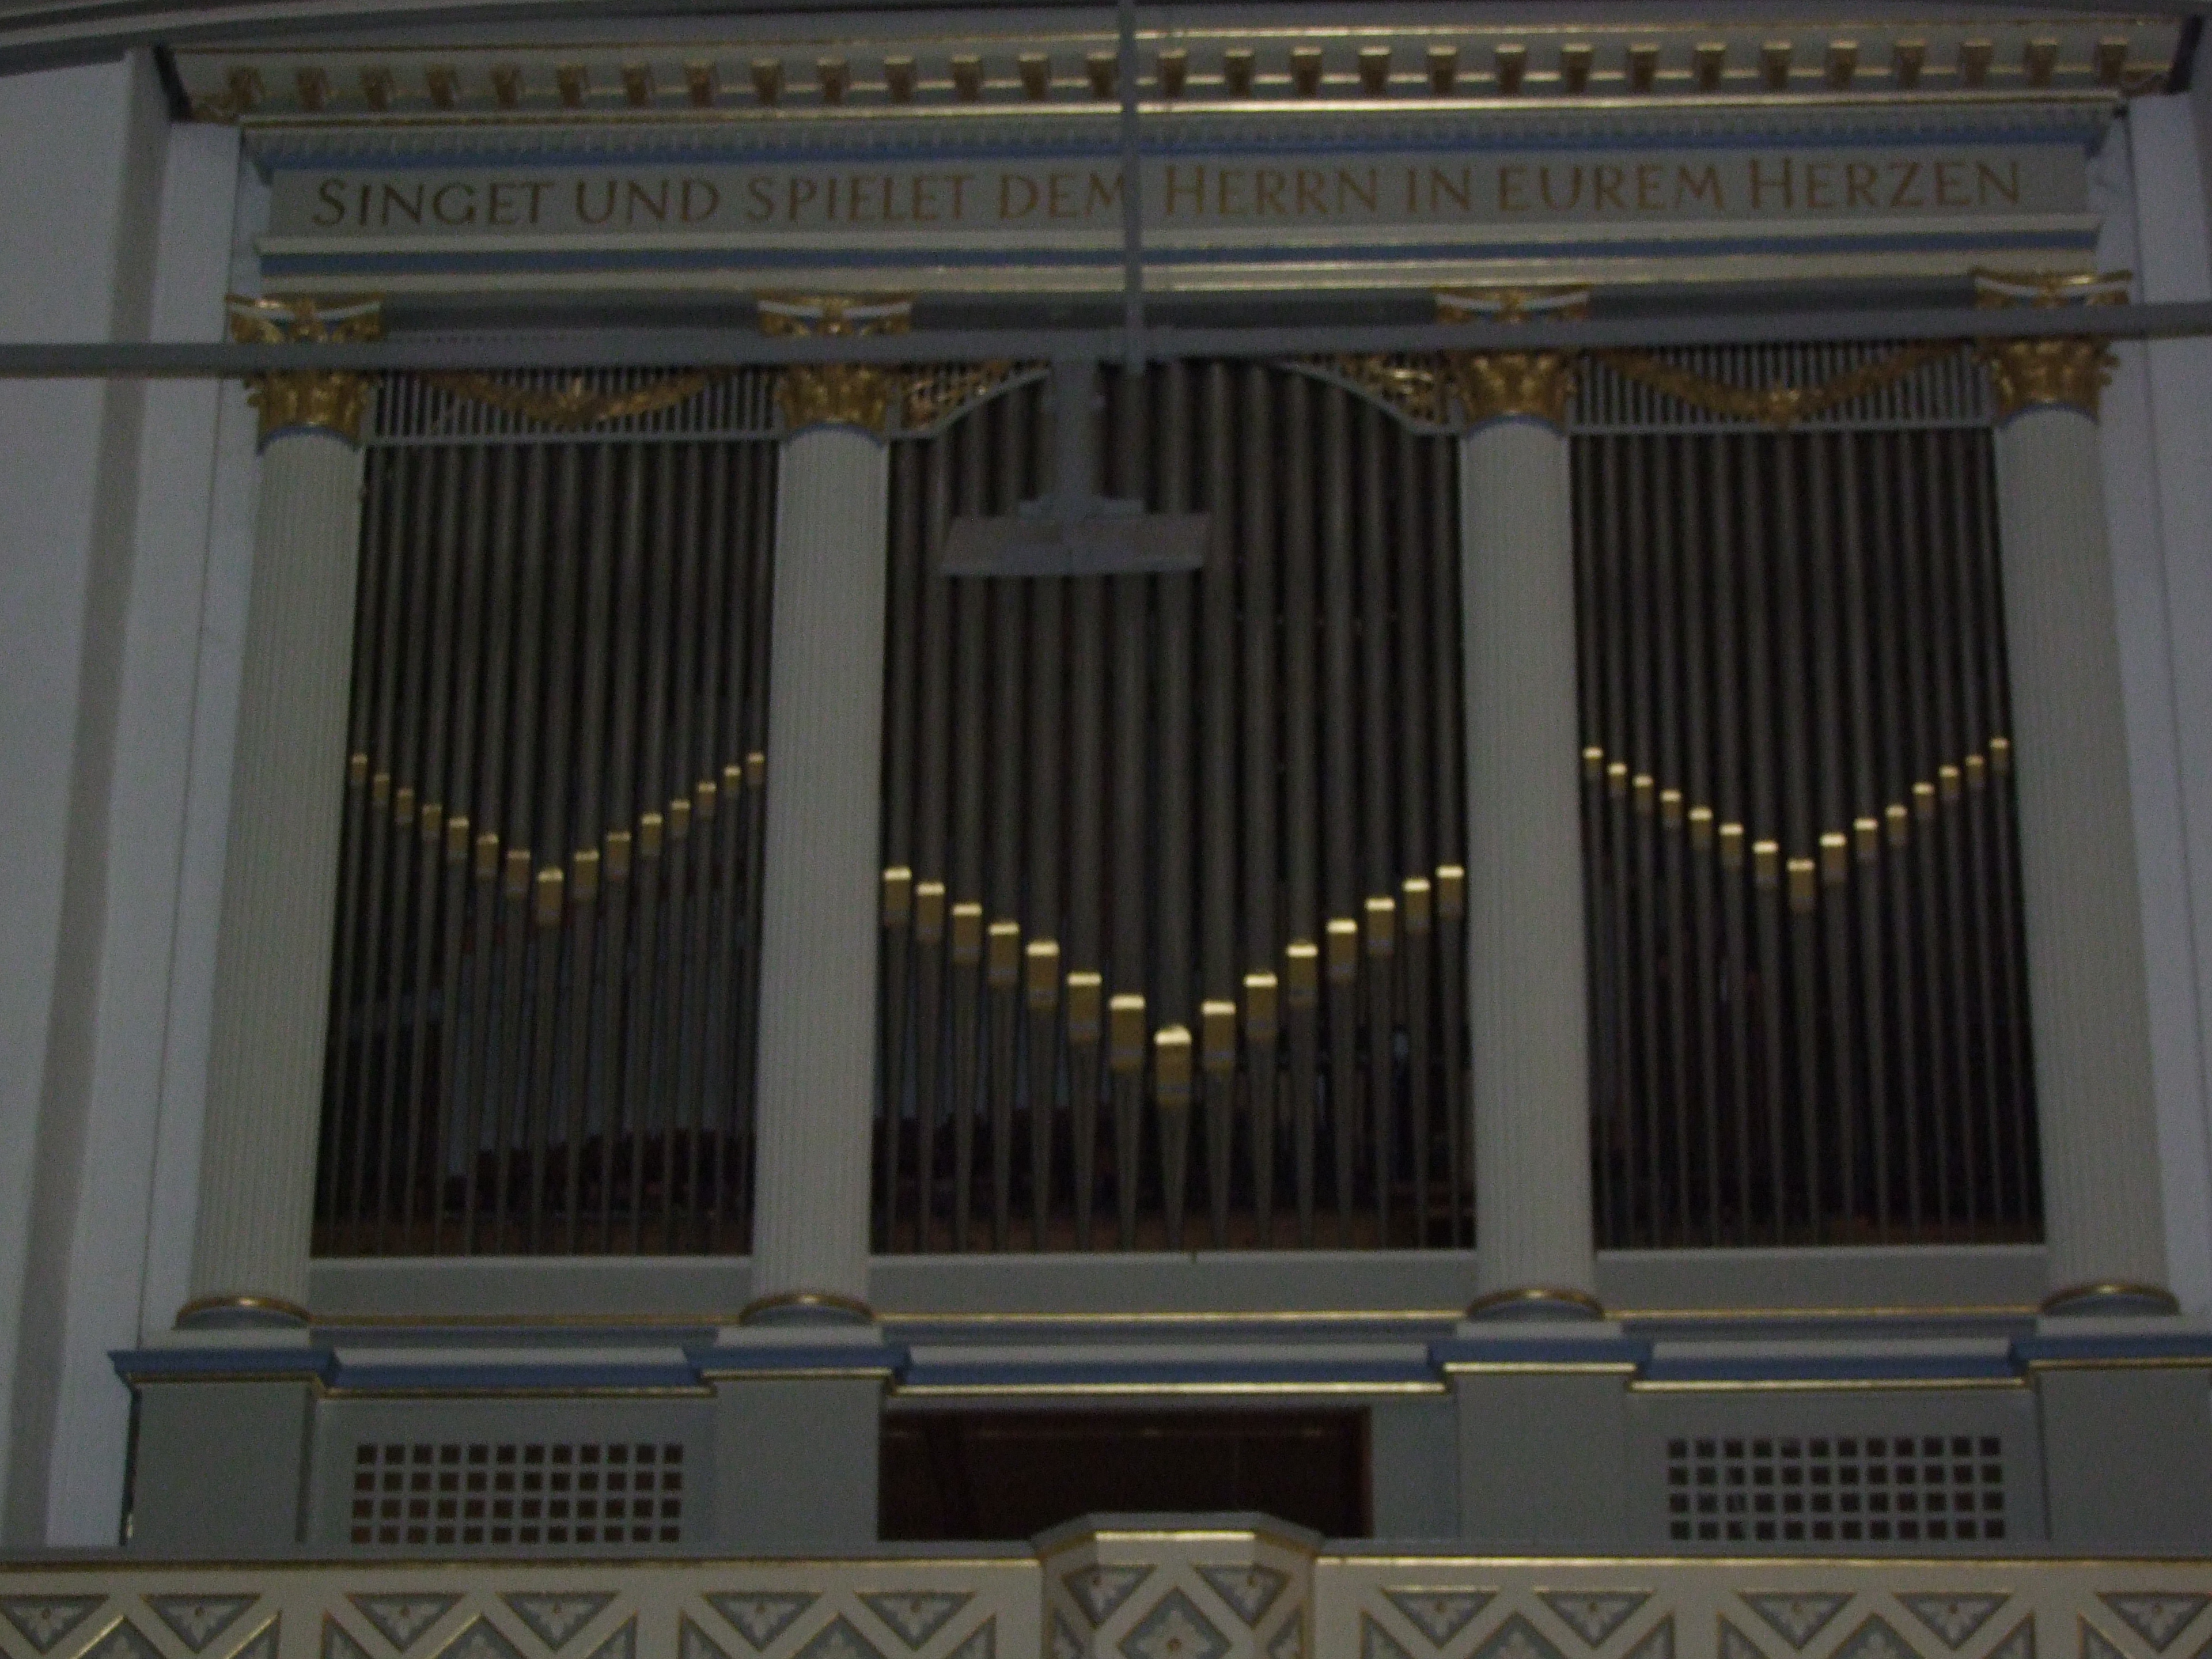 Die 200 Jahre alte Orgel